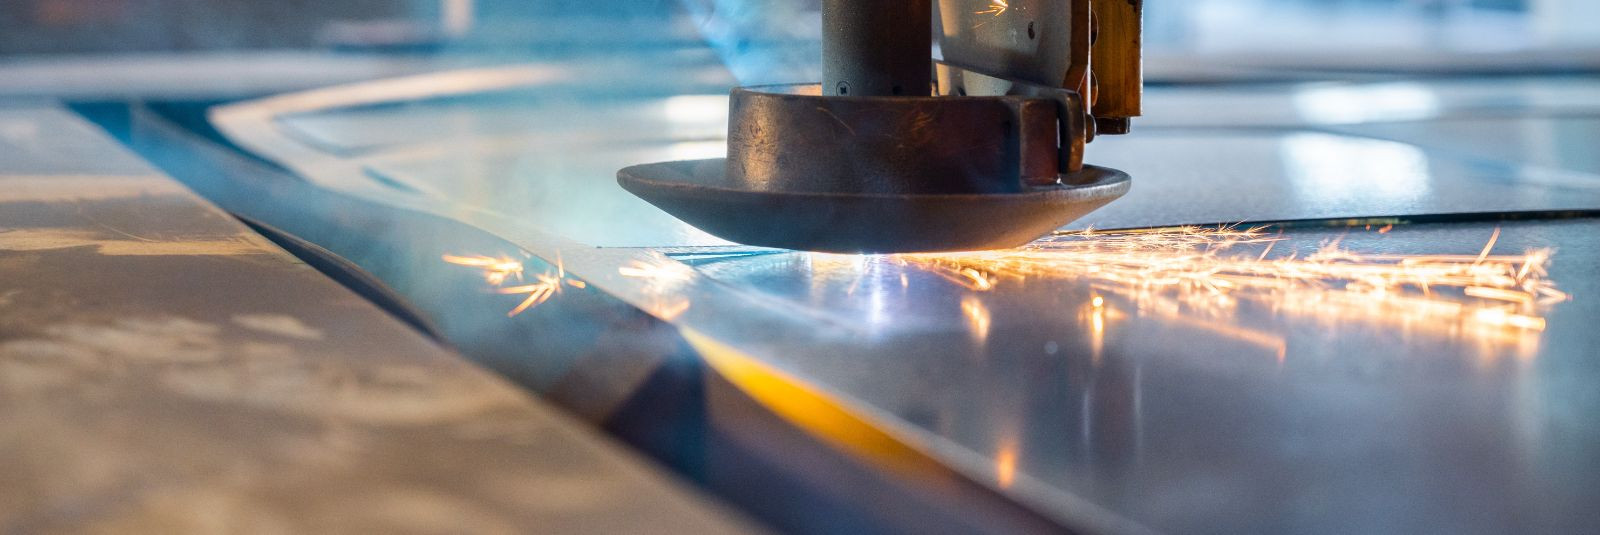 Laserlõikus on üks täpsemaid ja kiiremaid metallitöötlemise meetodeid tänapäeval ning tehnoloogia areng ei seisa paigal. Uusima põlvkonna laserlõikusmasinad või